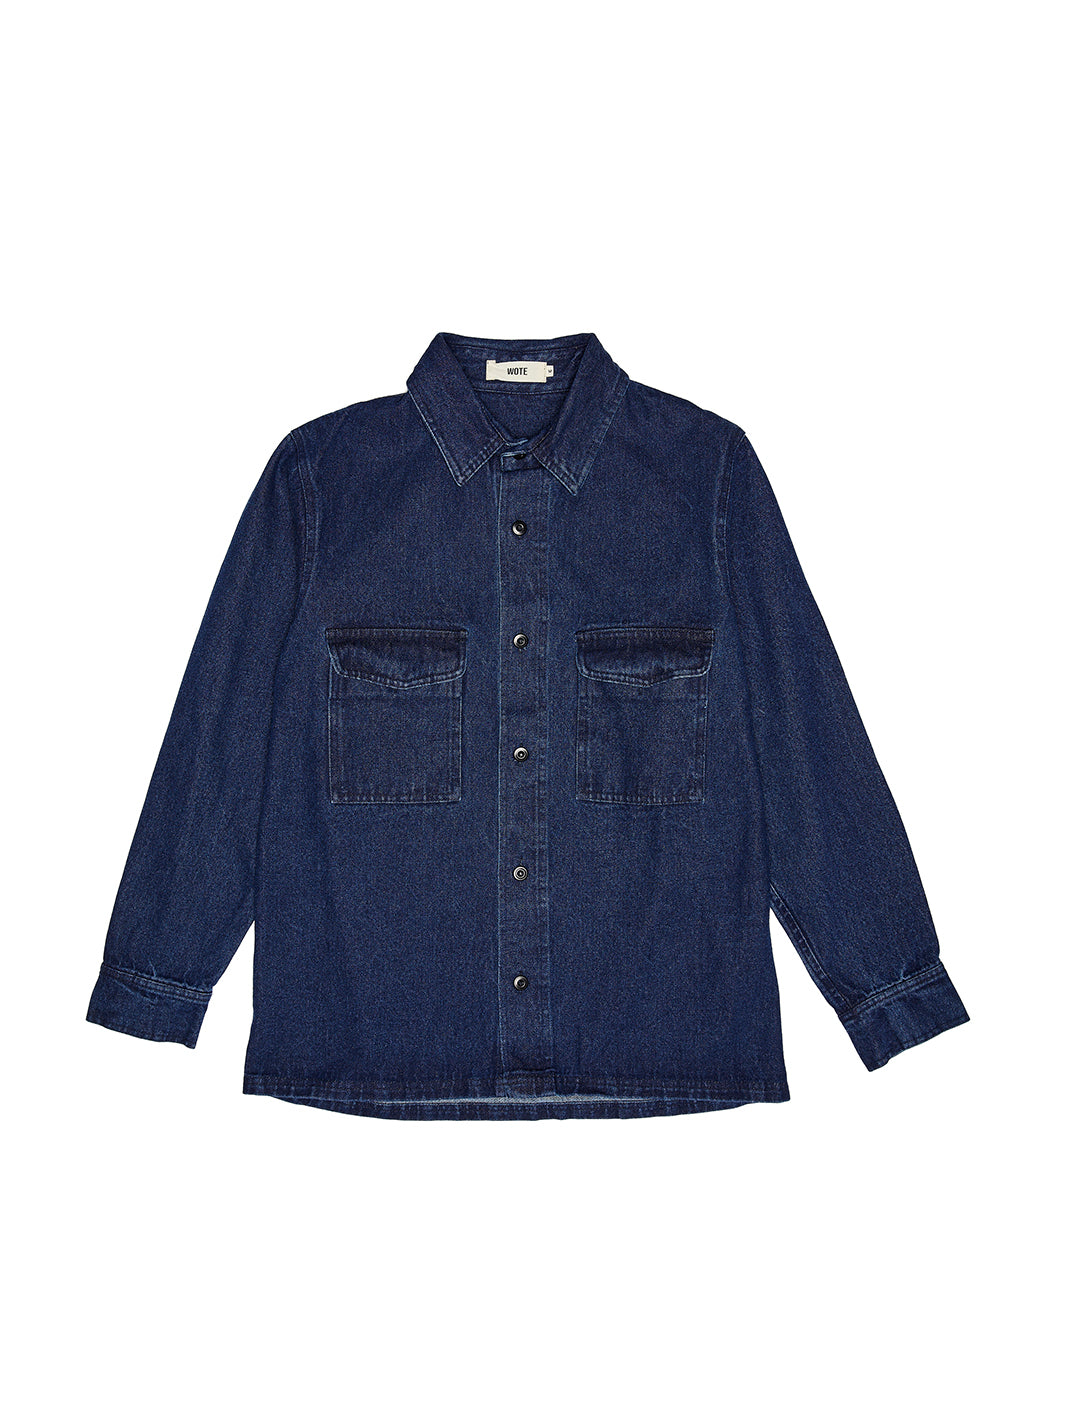 Nachhaltiges Damen Denim Overshirt aus Bio Baumwolle. Oversized Passform, dunkles Jeansblau, zwei Brusttaschen und Knopfleiste